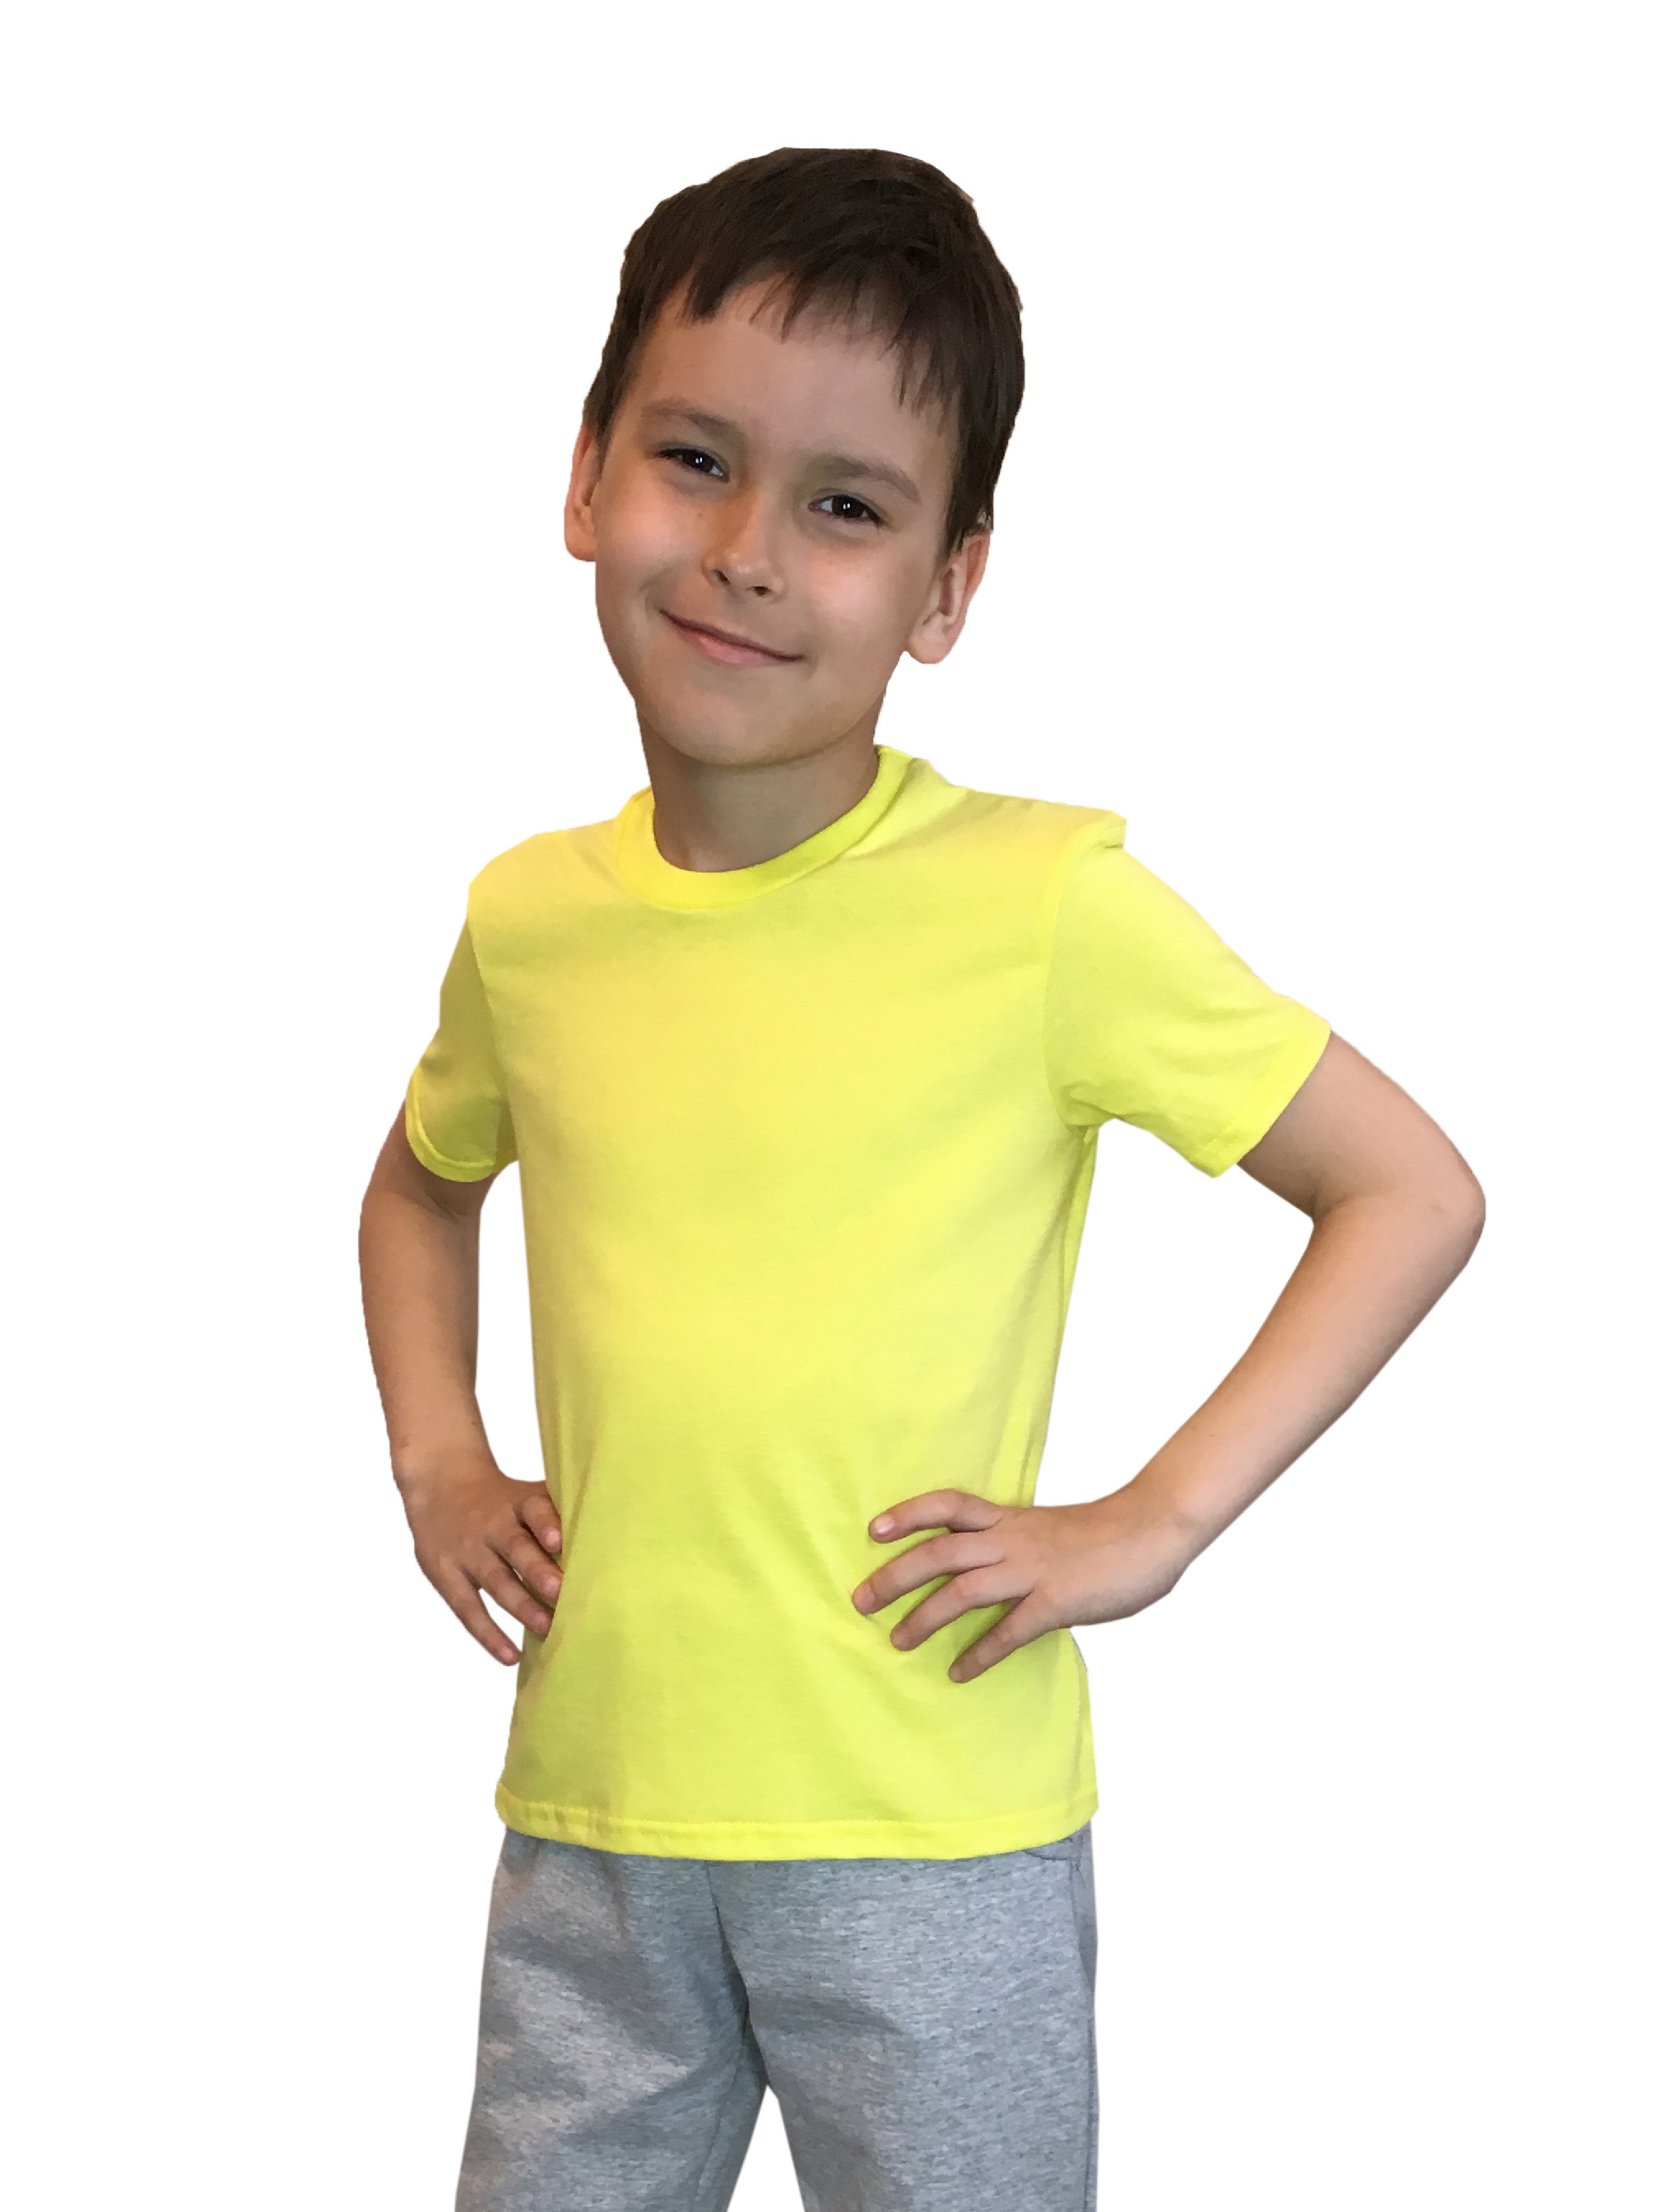 Футболка детская Детрик, желтая размер 104, Ф-1-54